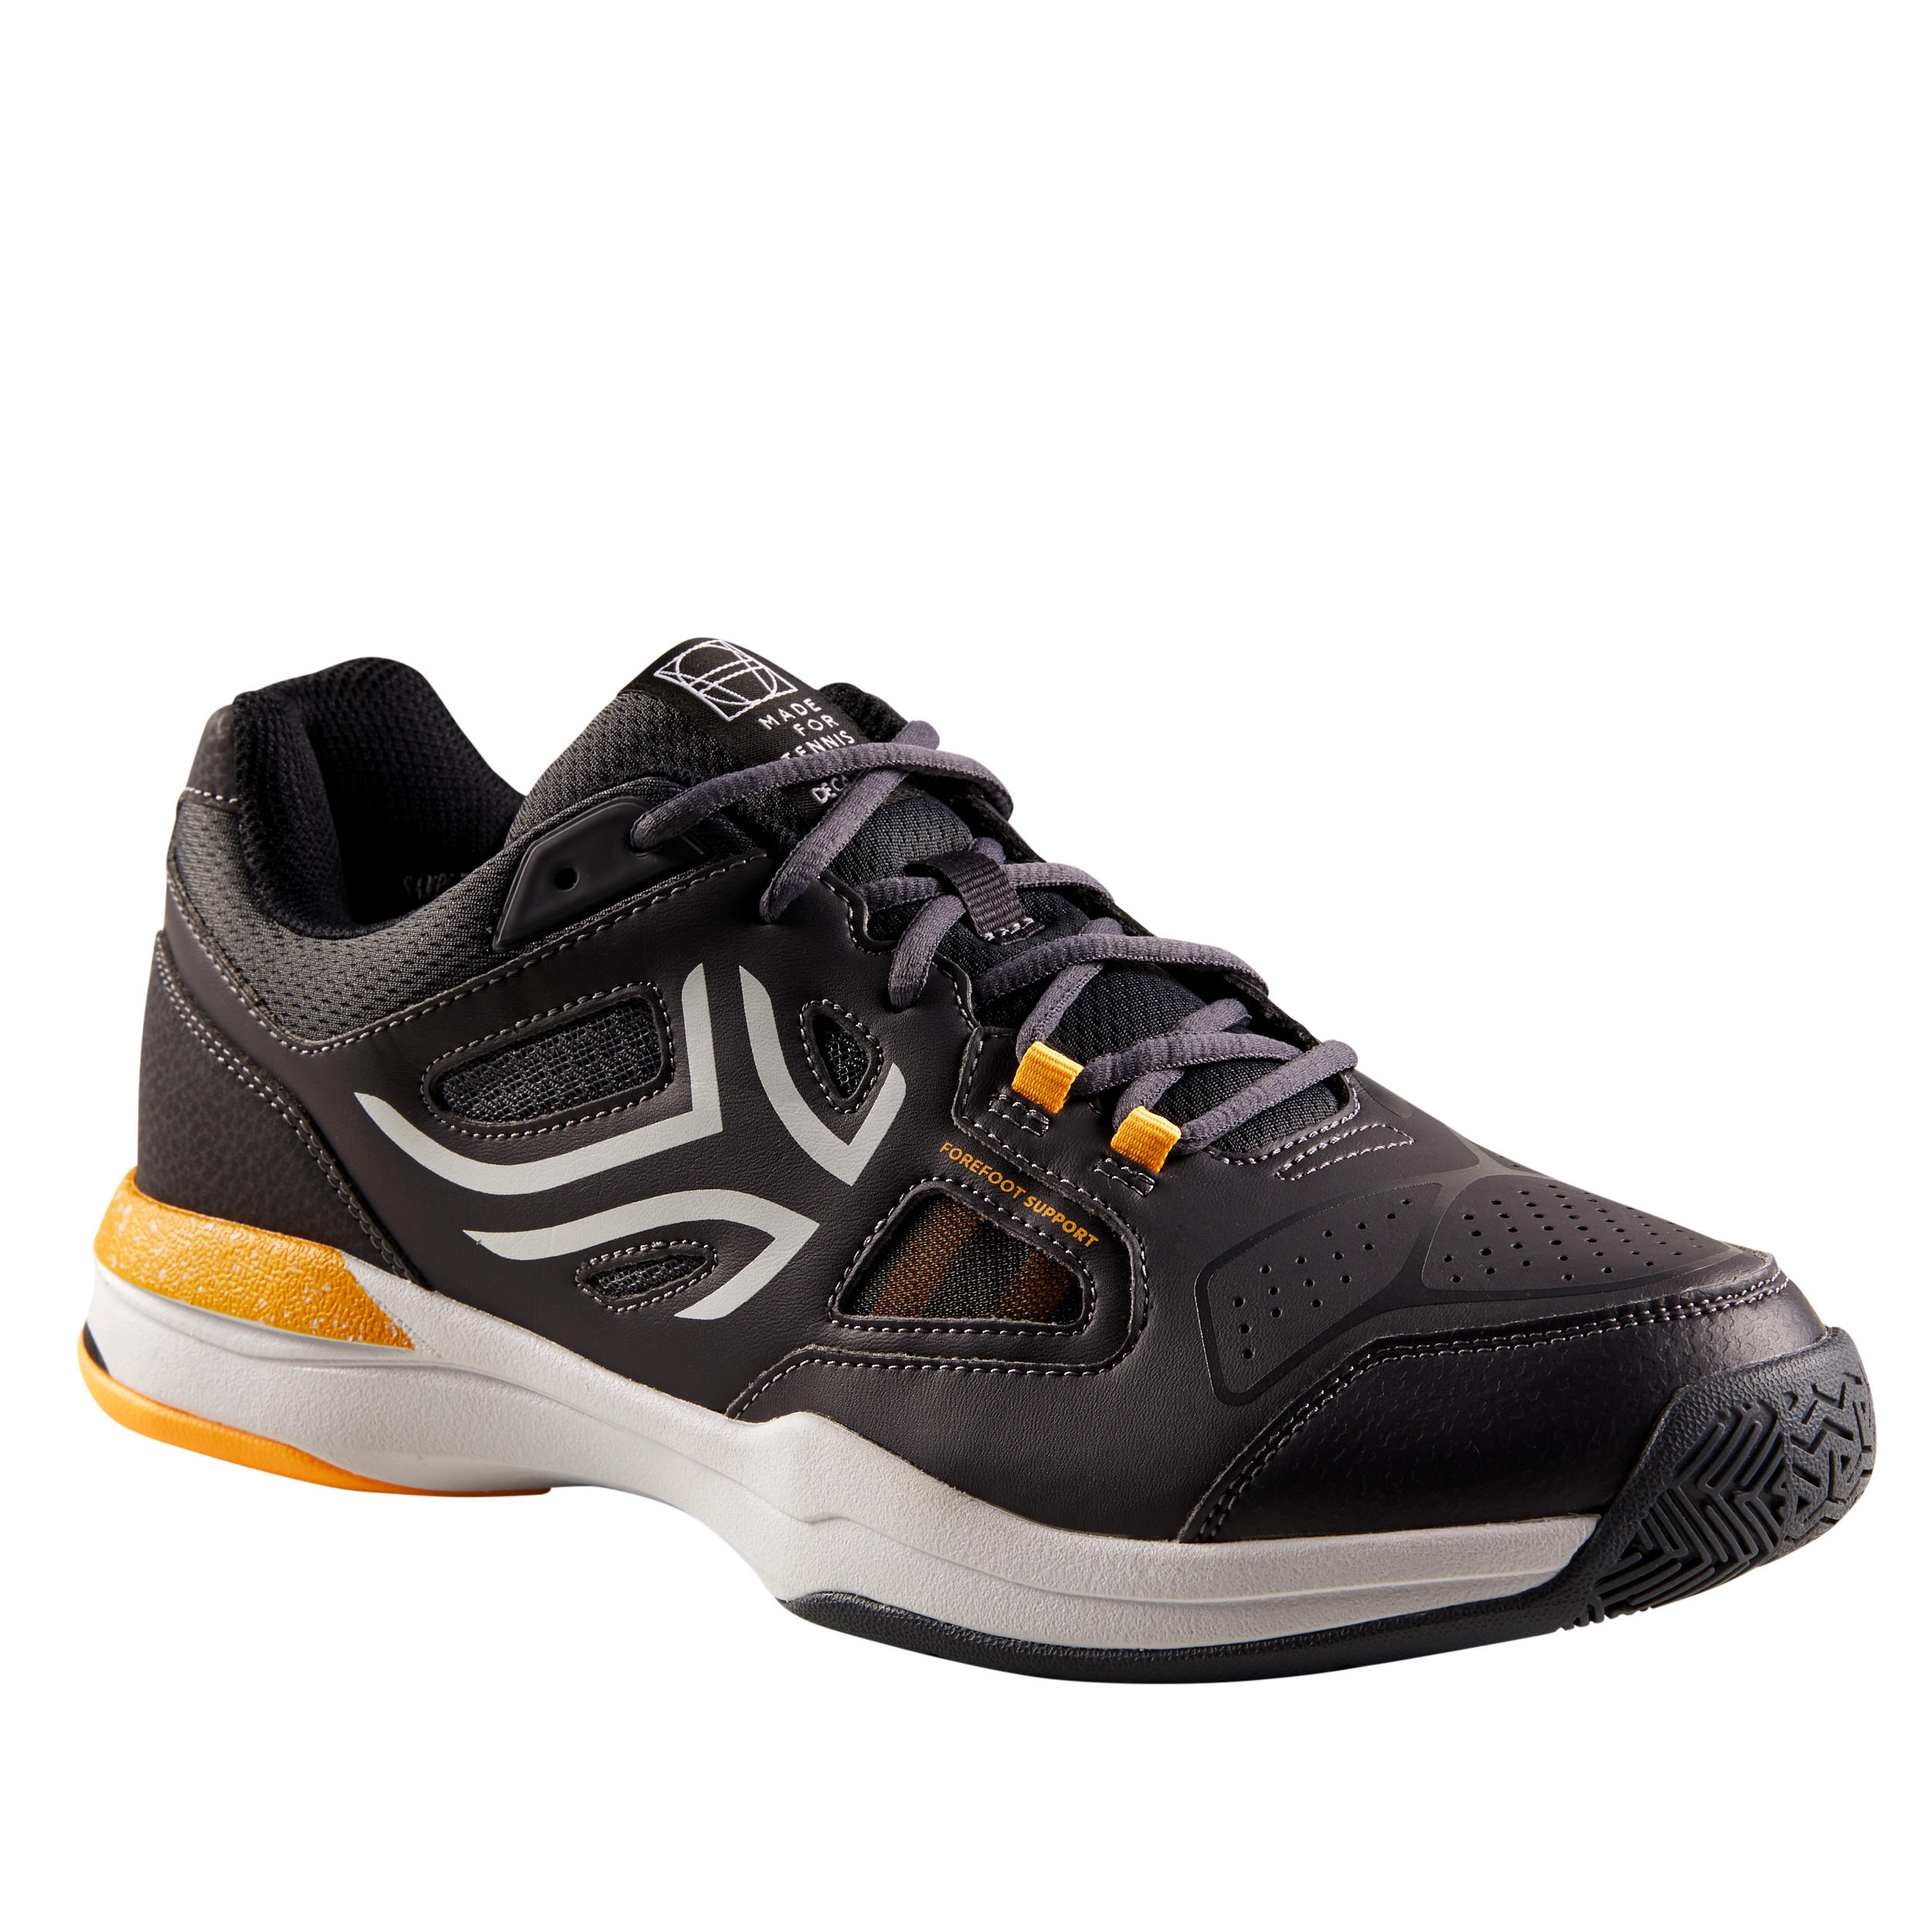 ARTENGO Men's Multi-Court Tennis Shoes TS500 - Grey/Yellow